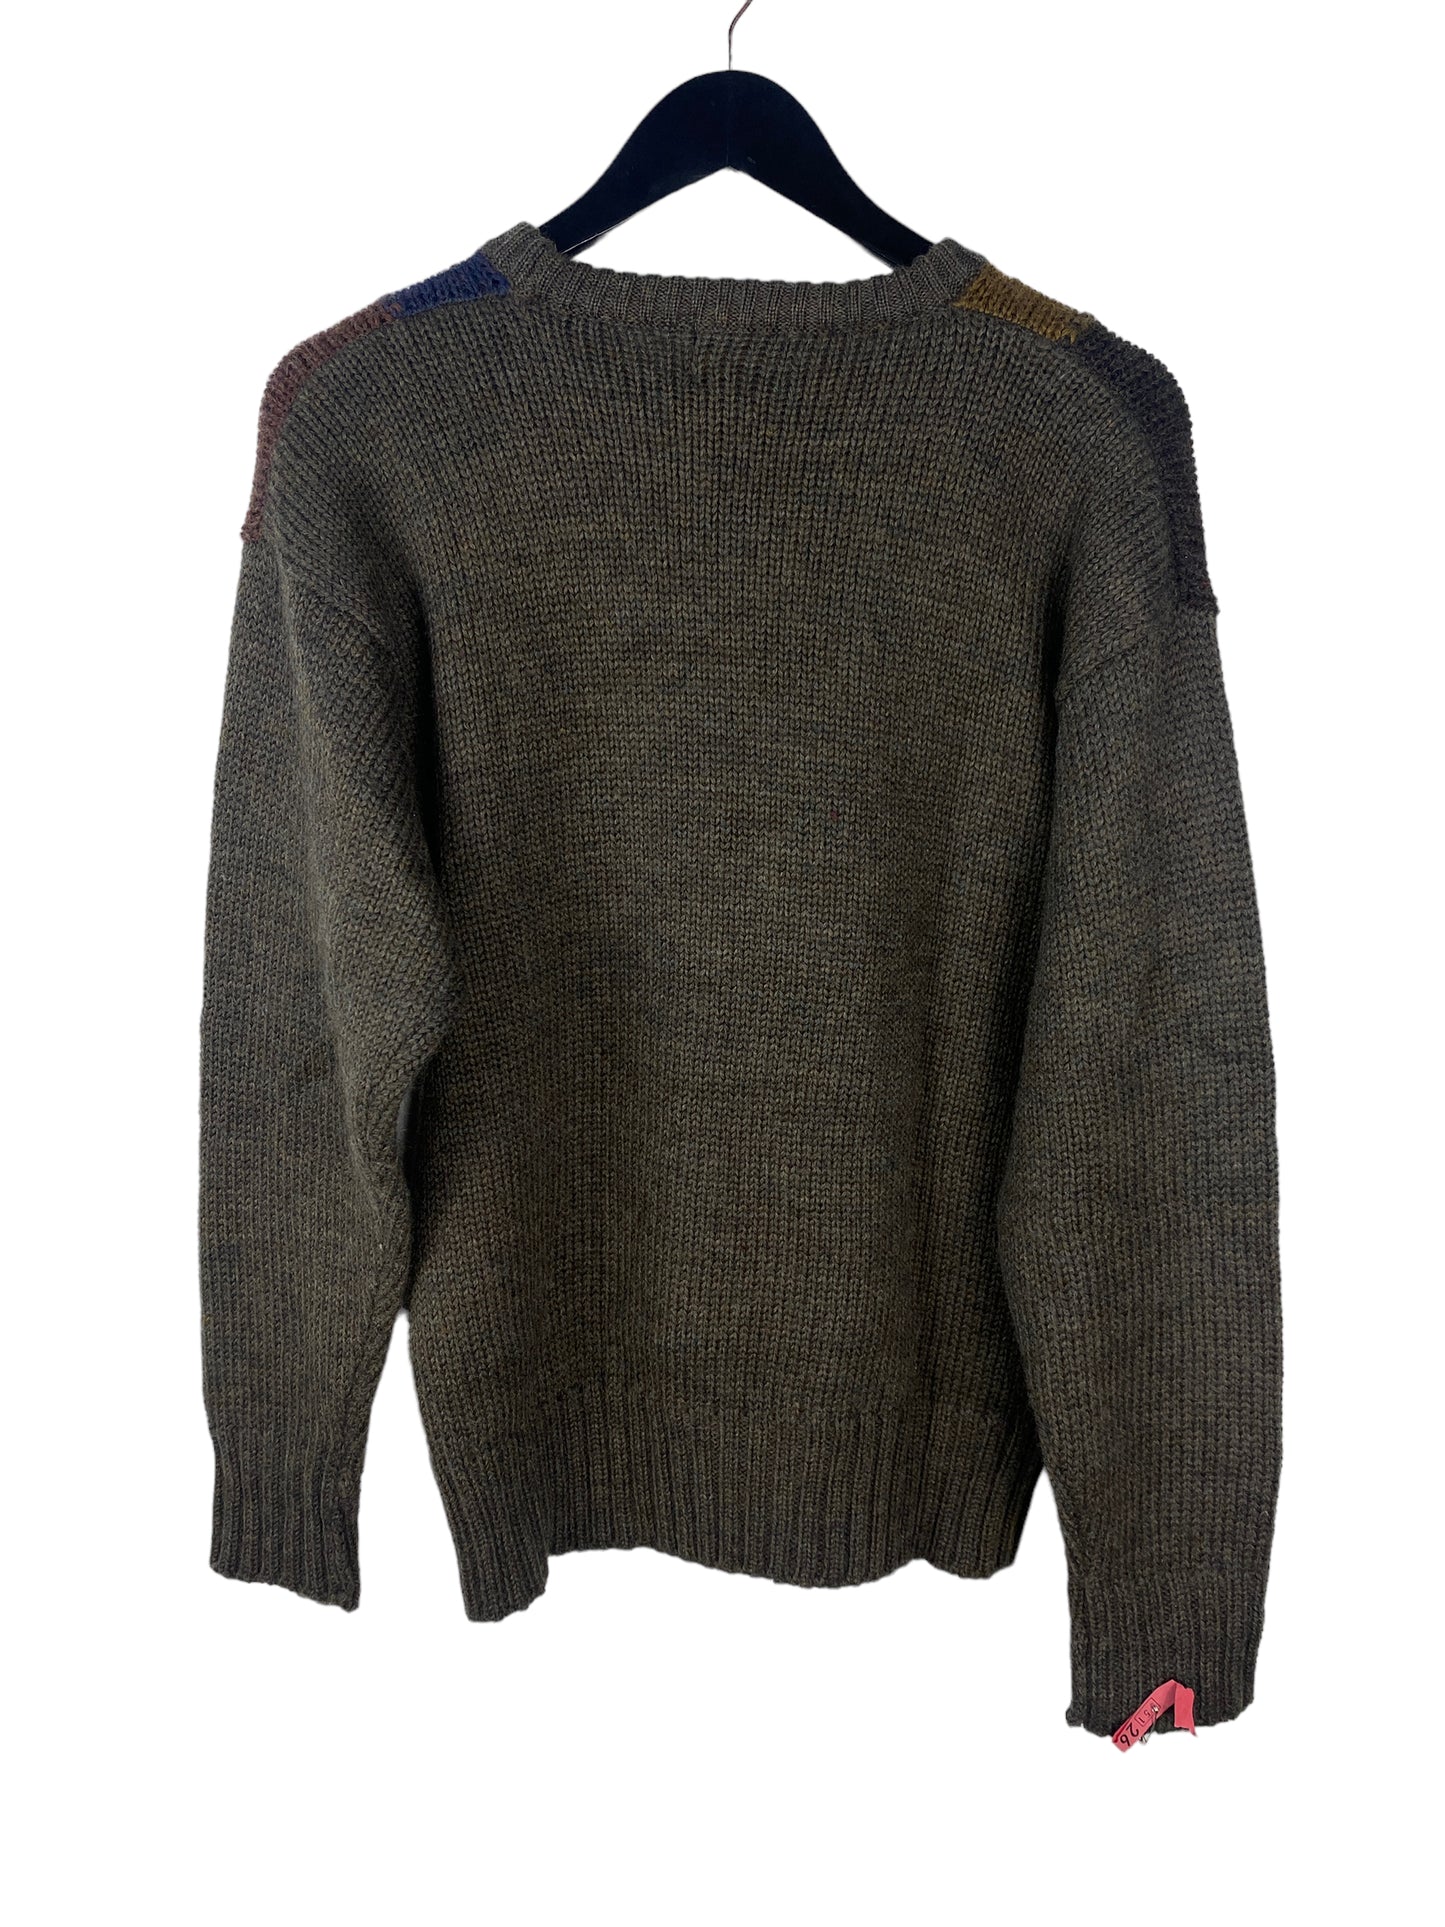 VTG ColorBlock Sweater Sz M/L